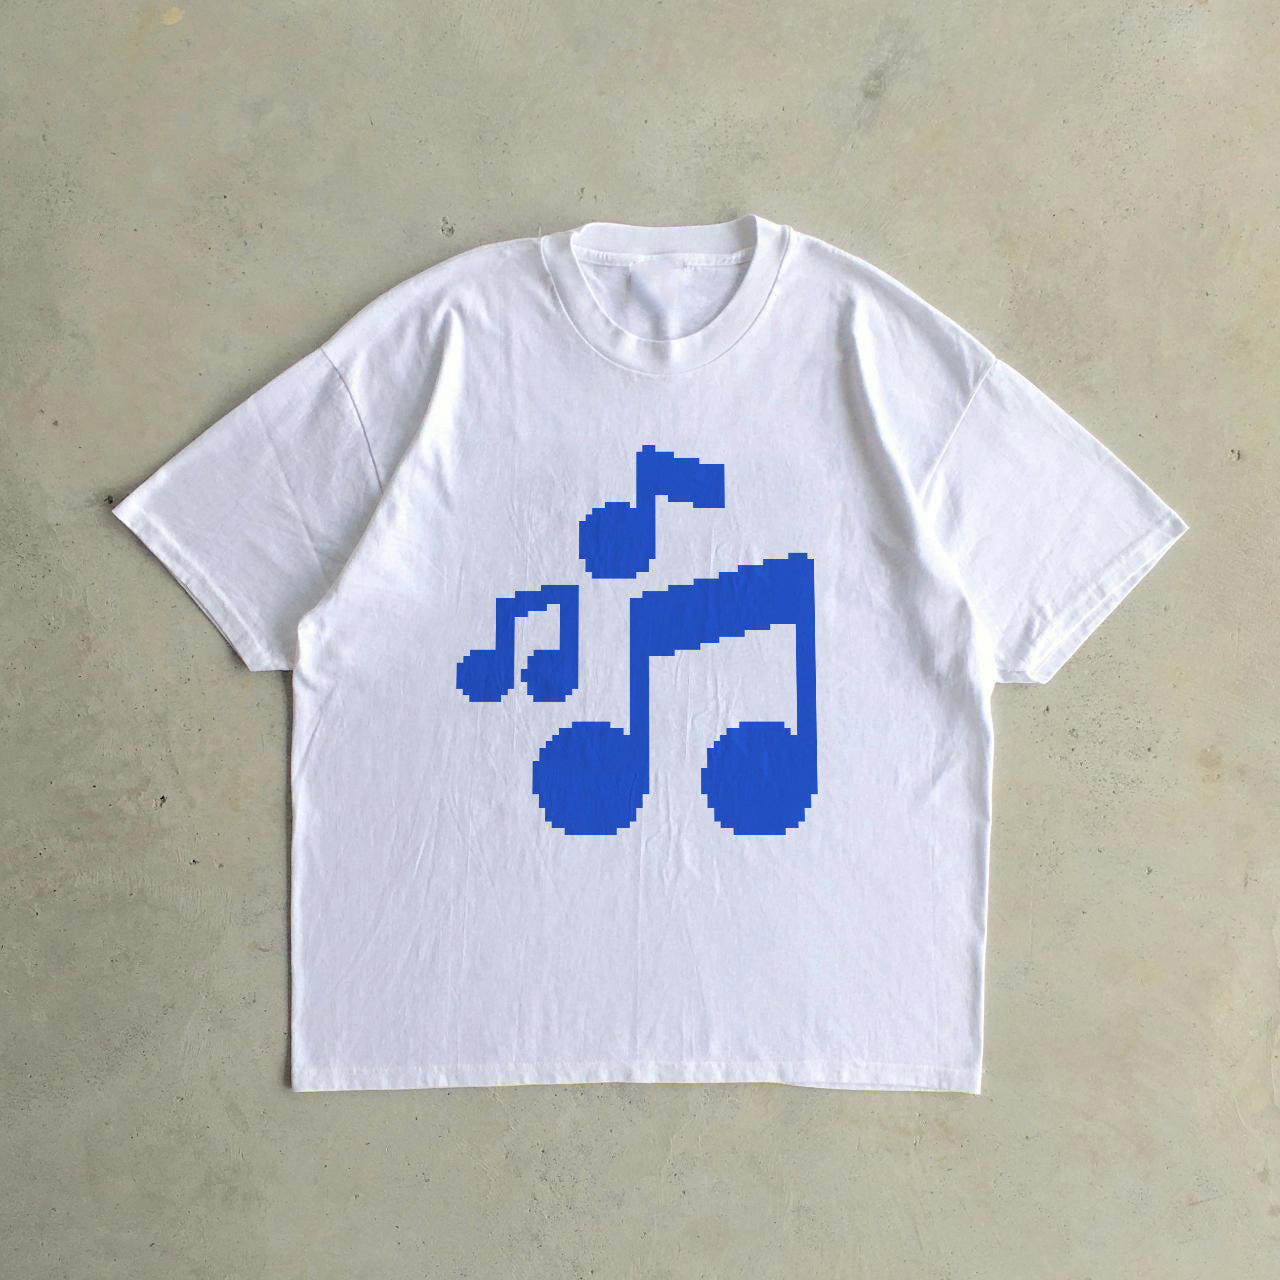 MUSIQUE® Unisex T-Shirt